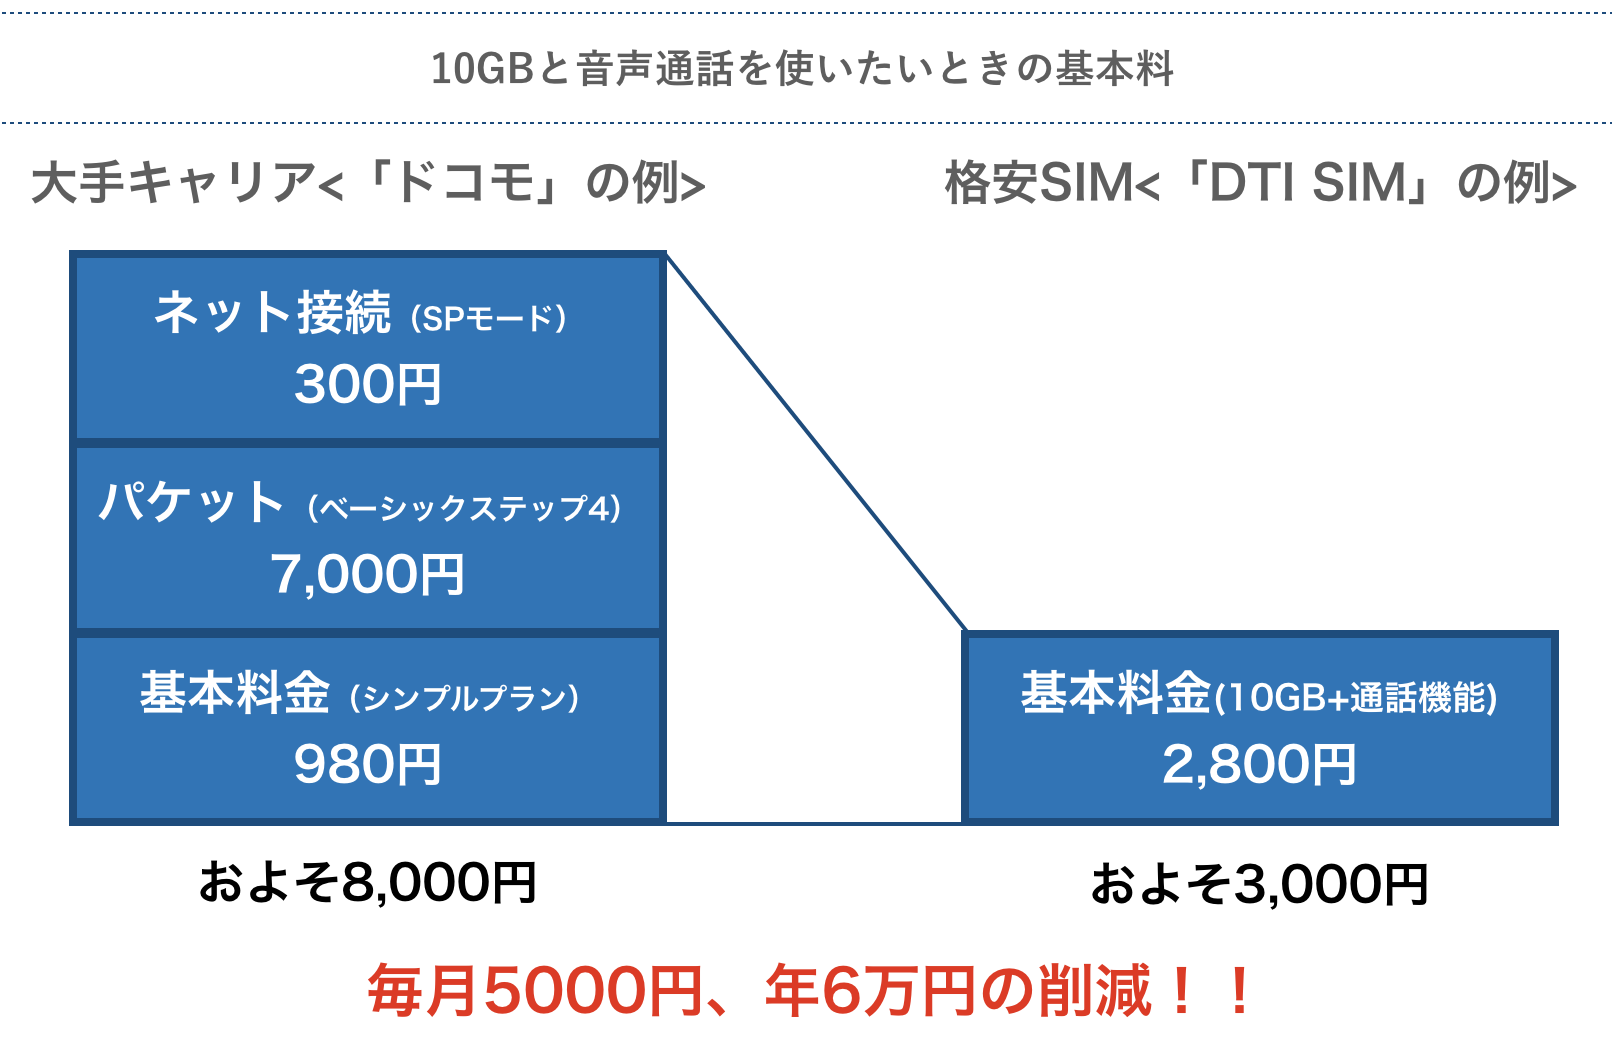 ドコモと格安SIMの基本料比較